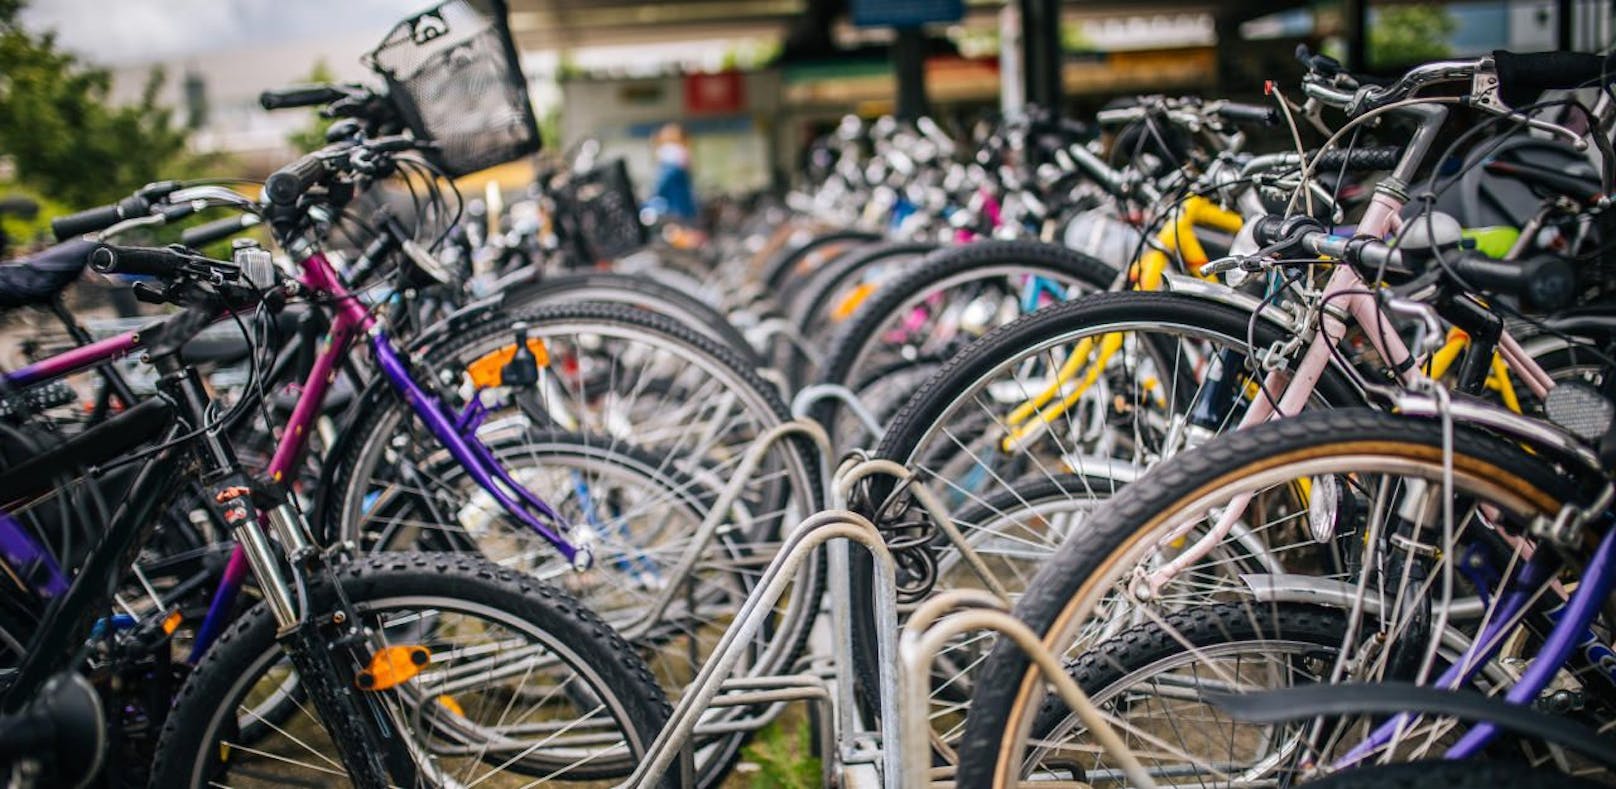 Wegen einem Lieferengpass haben viele Fahrradhersteller bereits einen Bestellstopp verhängt.